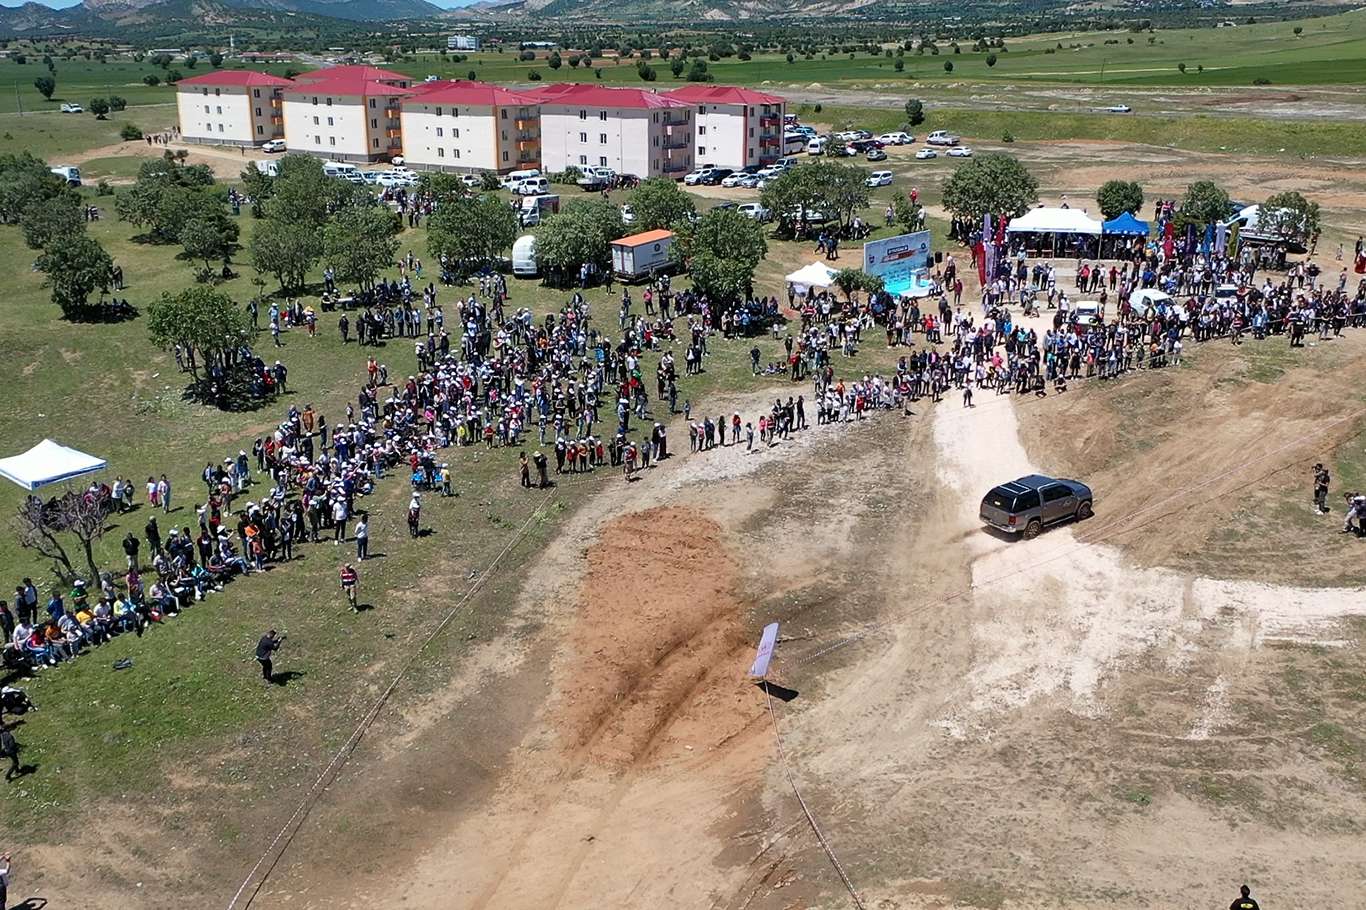 diyarbakirda-off-road-festivali-duzenlendi-4c68aab7.jpg